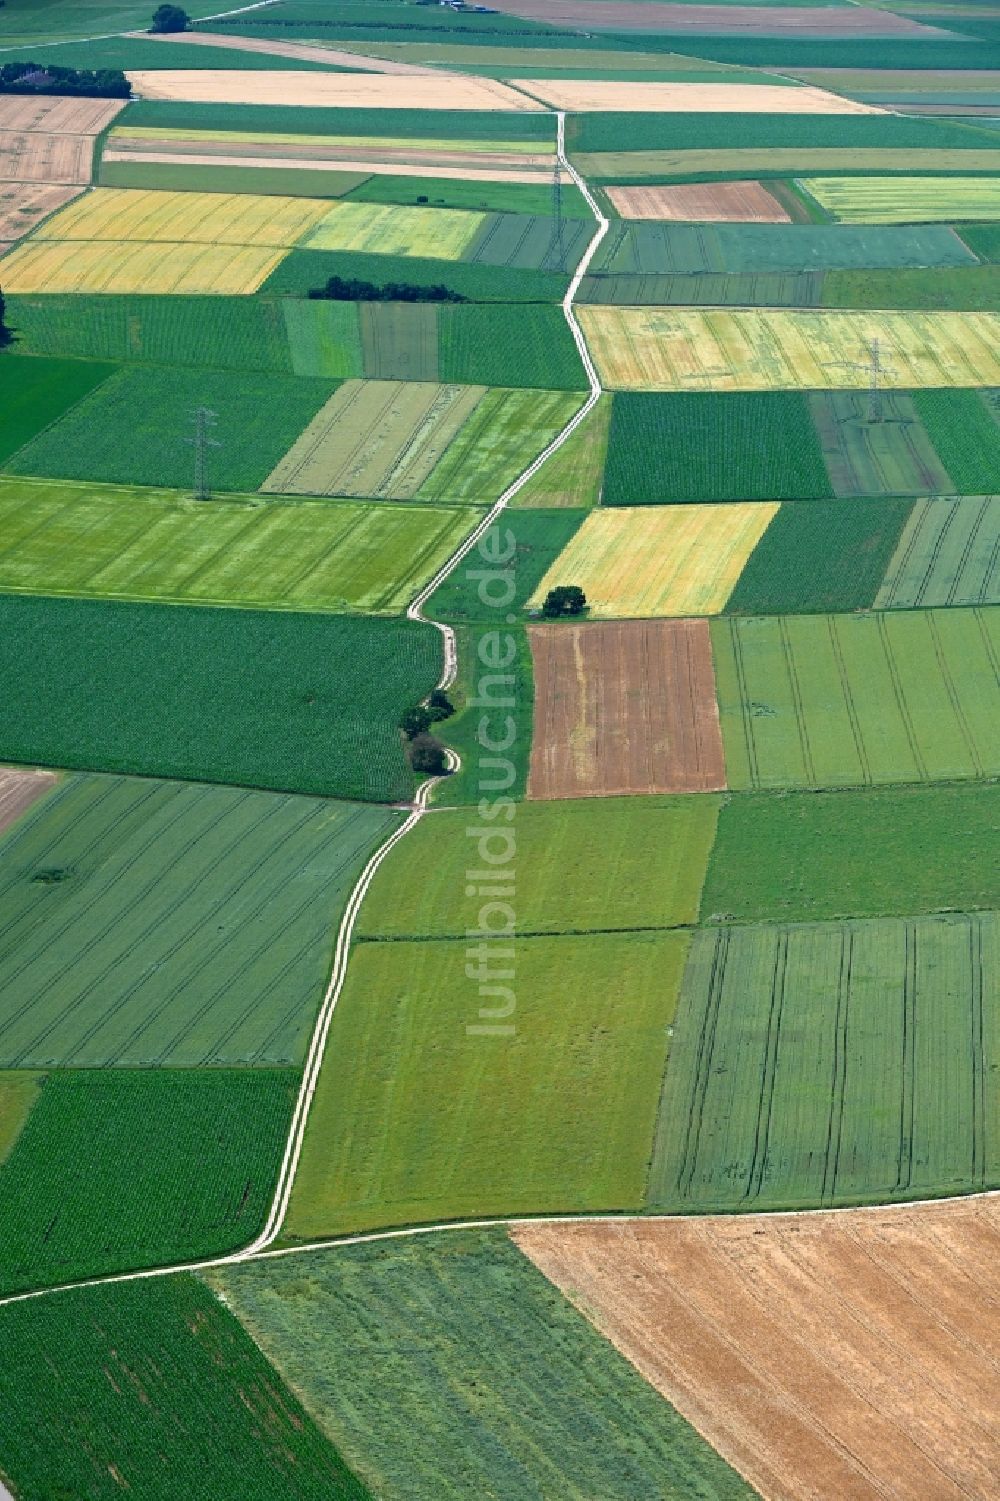 Luftaufnahme Dietfurt an der Altmühl - Strukturen auf landwirtschaftlichen Feldern in Dietfurt an der Altmühl im Bundesland Bayern, Deutschland